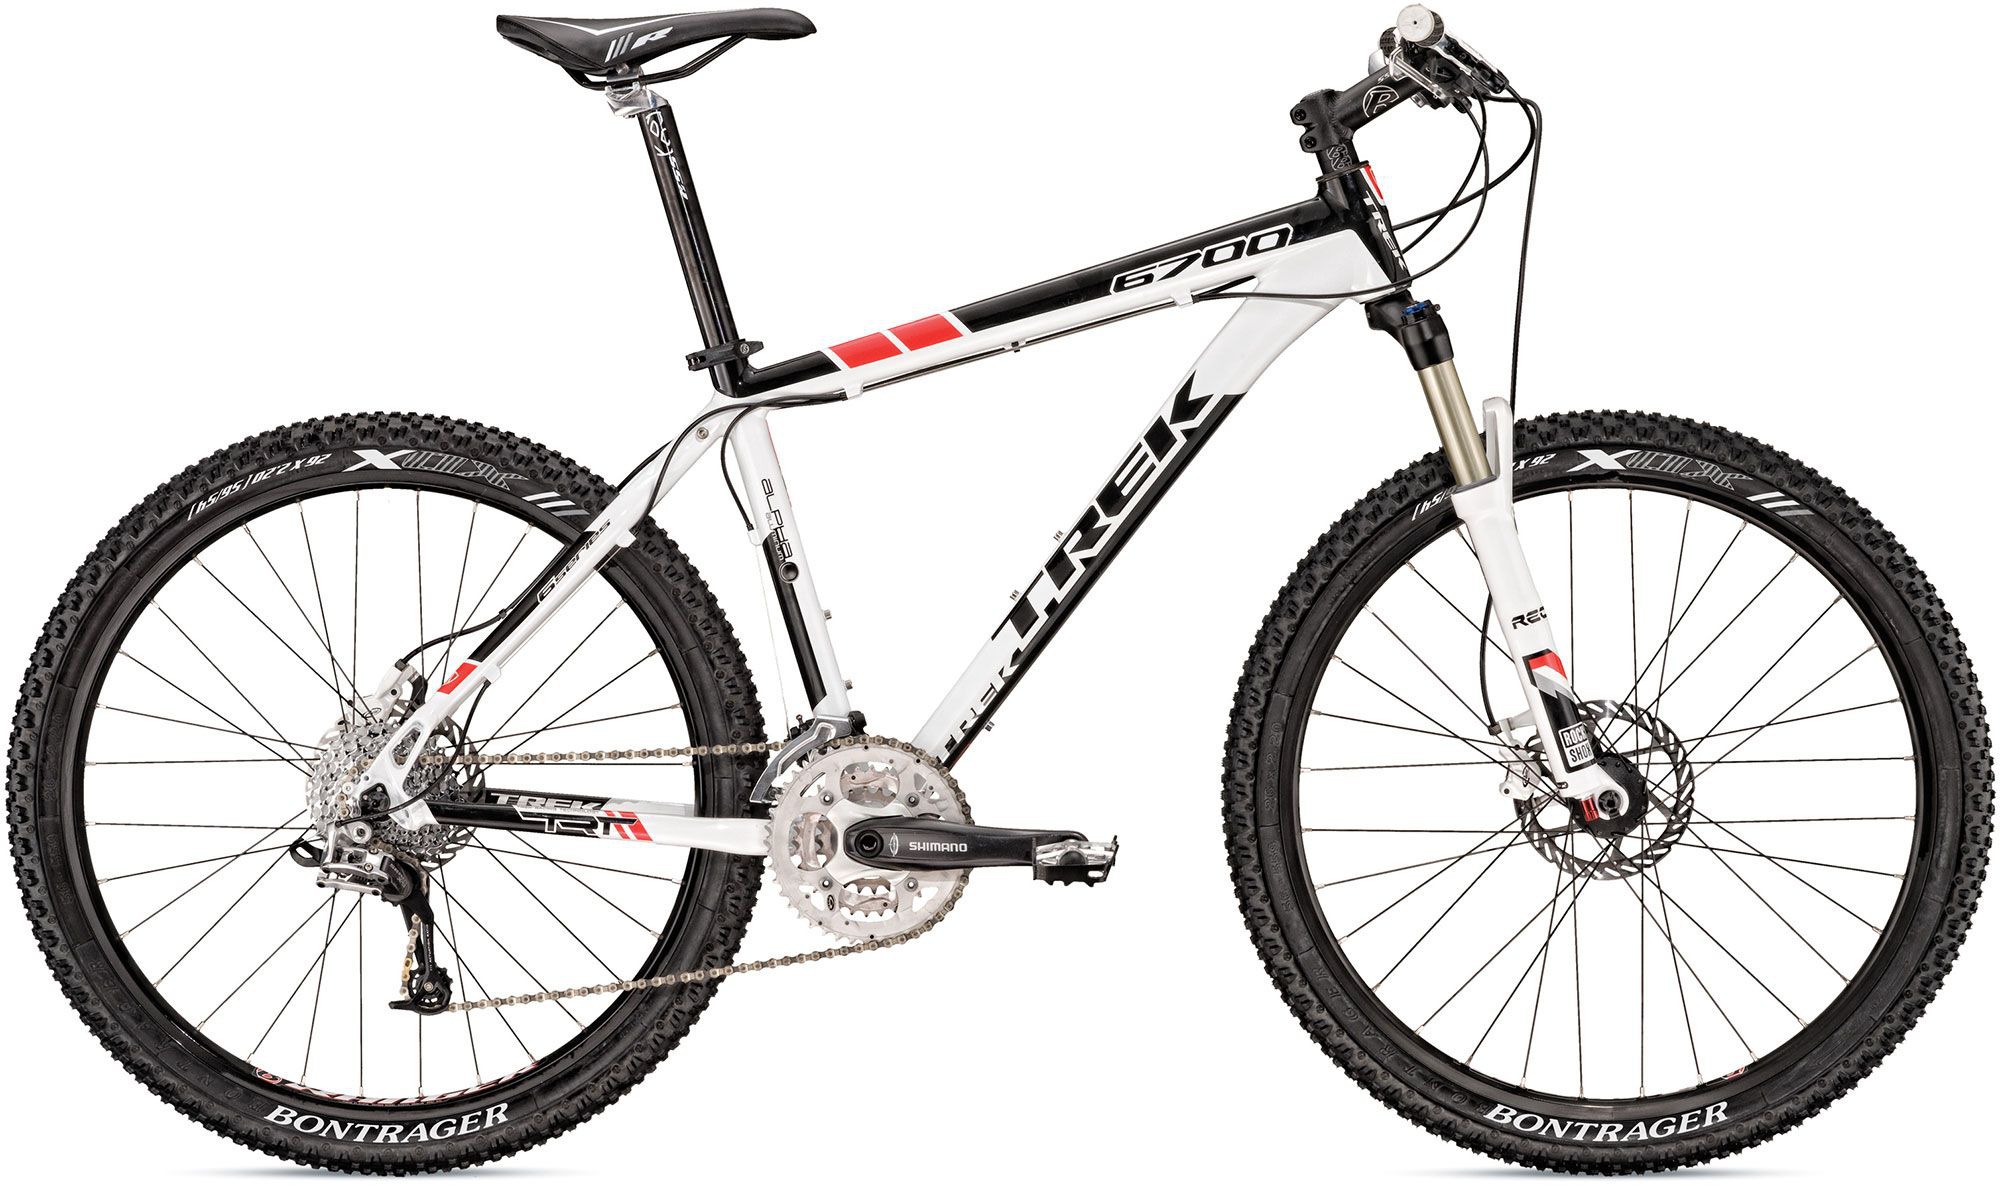 2010 Trek 6700 - Bicycle Details 